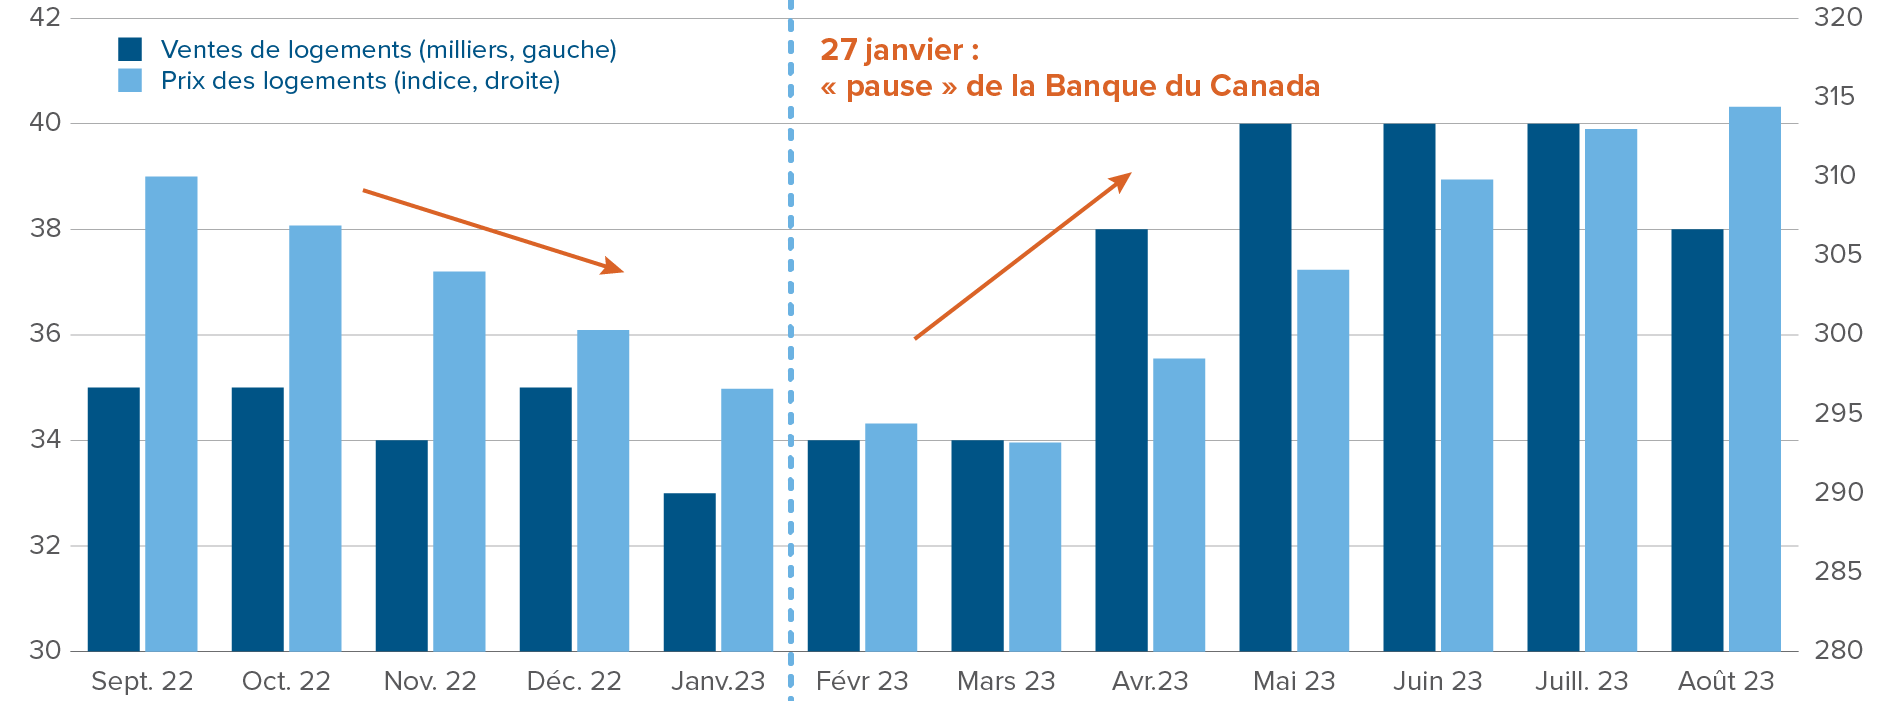 Graphique : Impact sur le marché immobilier de la pause de janvier de la Banque du Canada, les ventes et les prix des logements ont augmenté.